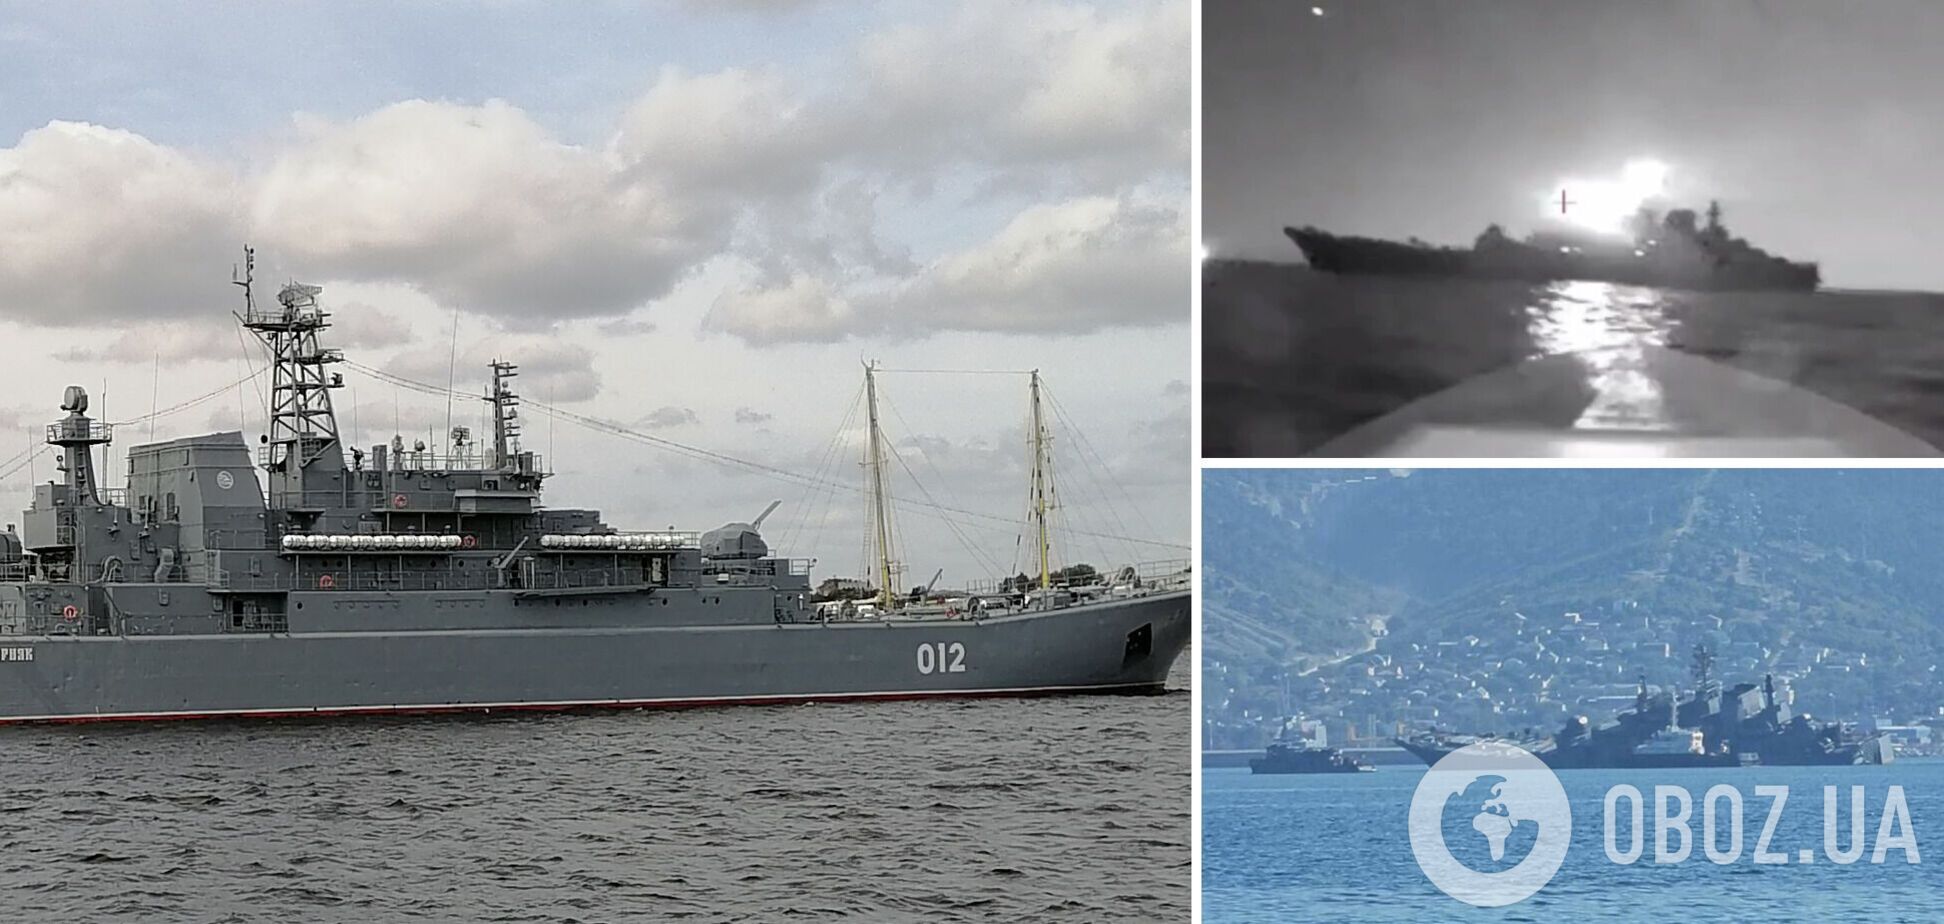 Операцію провела СБУ: момент атаки дрона на десантний корабель РФ у Новоросійську потрапив на відео. Ексклюзивні подробиці